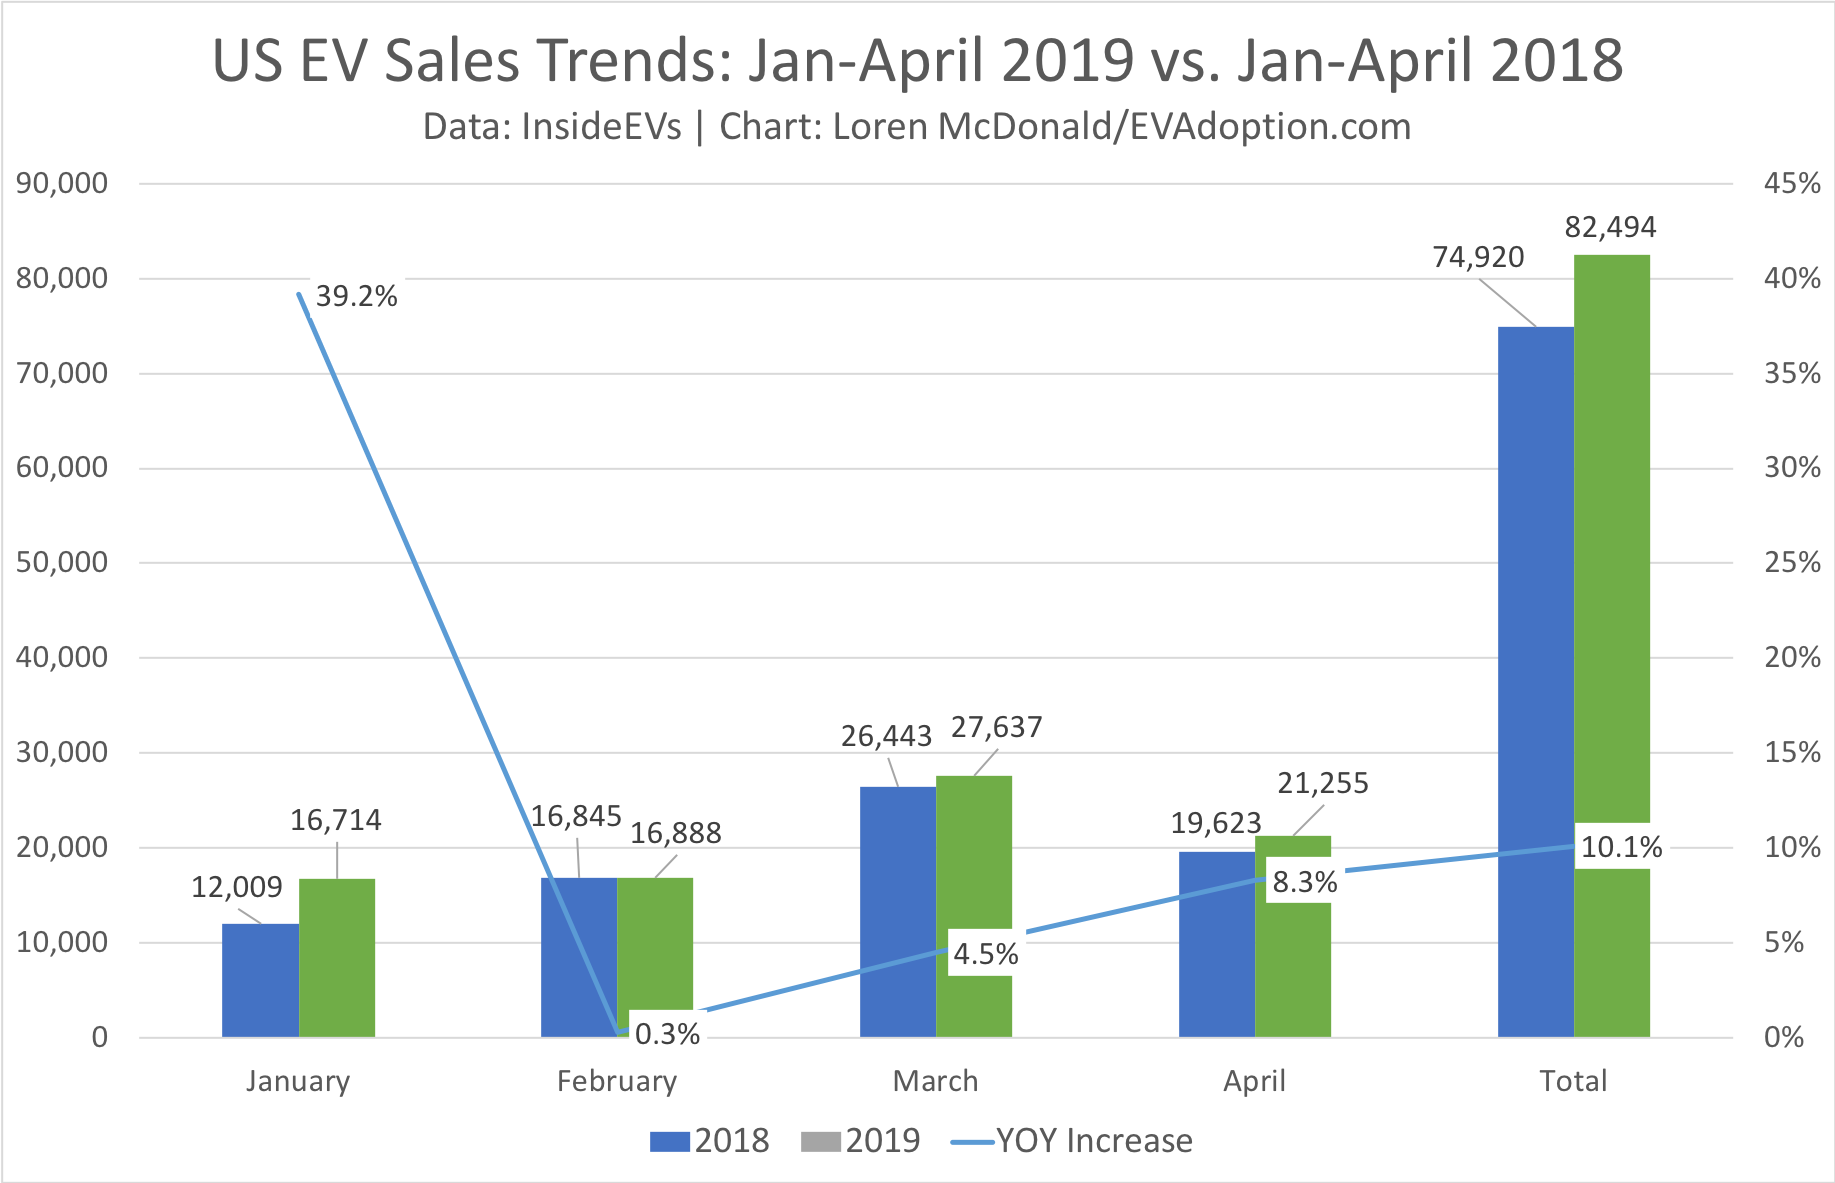 Jan-April 2019 vs 2018 US EV Sales trends